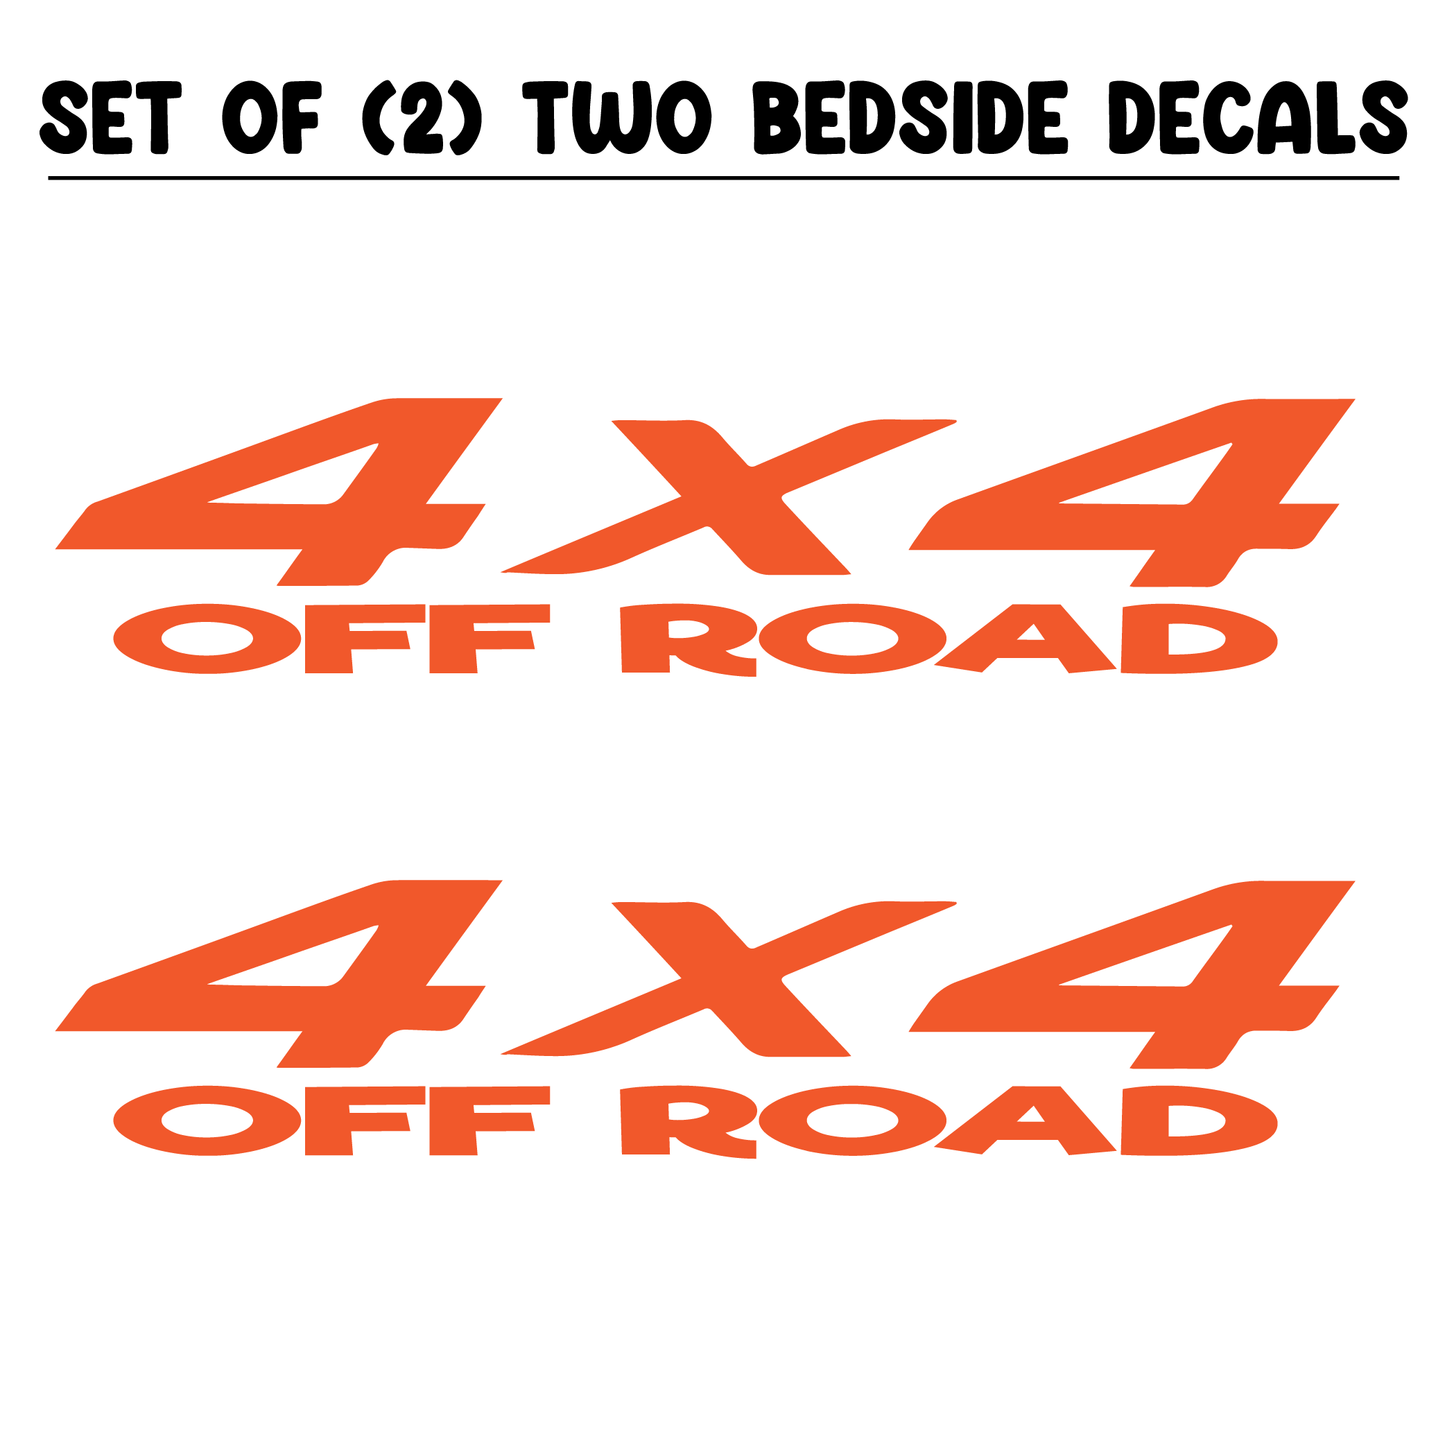 Shop Vinyl Design RAM Trucks 4 x 4 Off Road Replacement Bedside Decals #11 Vehicle decal 001 Shop Vinyl Design decals stickers